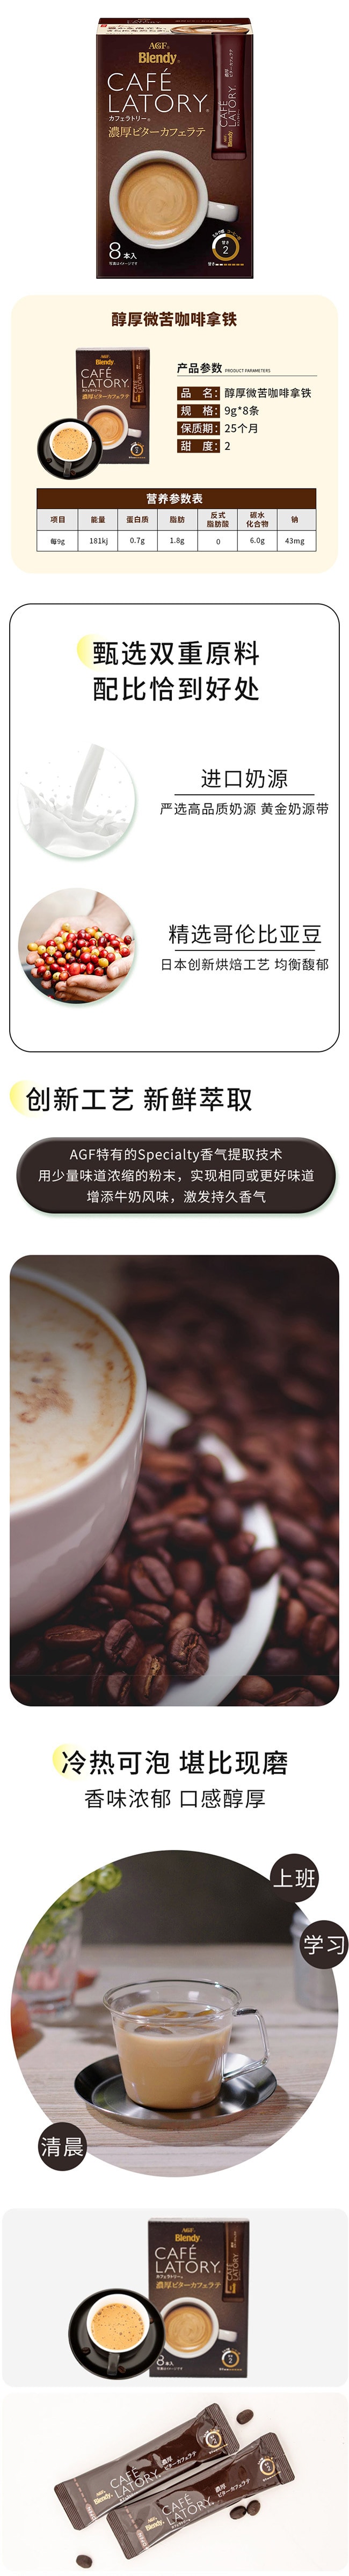 【日本直邮】AGF CAFE LATORY 醇厚微苦拿铁咖啡 8条入